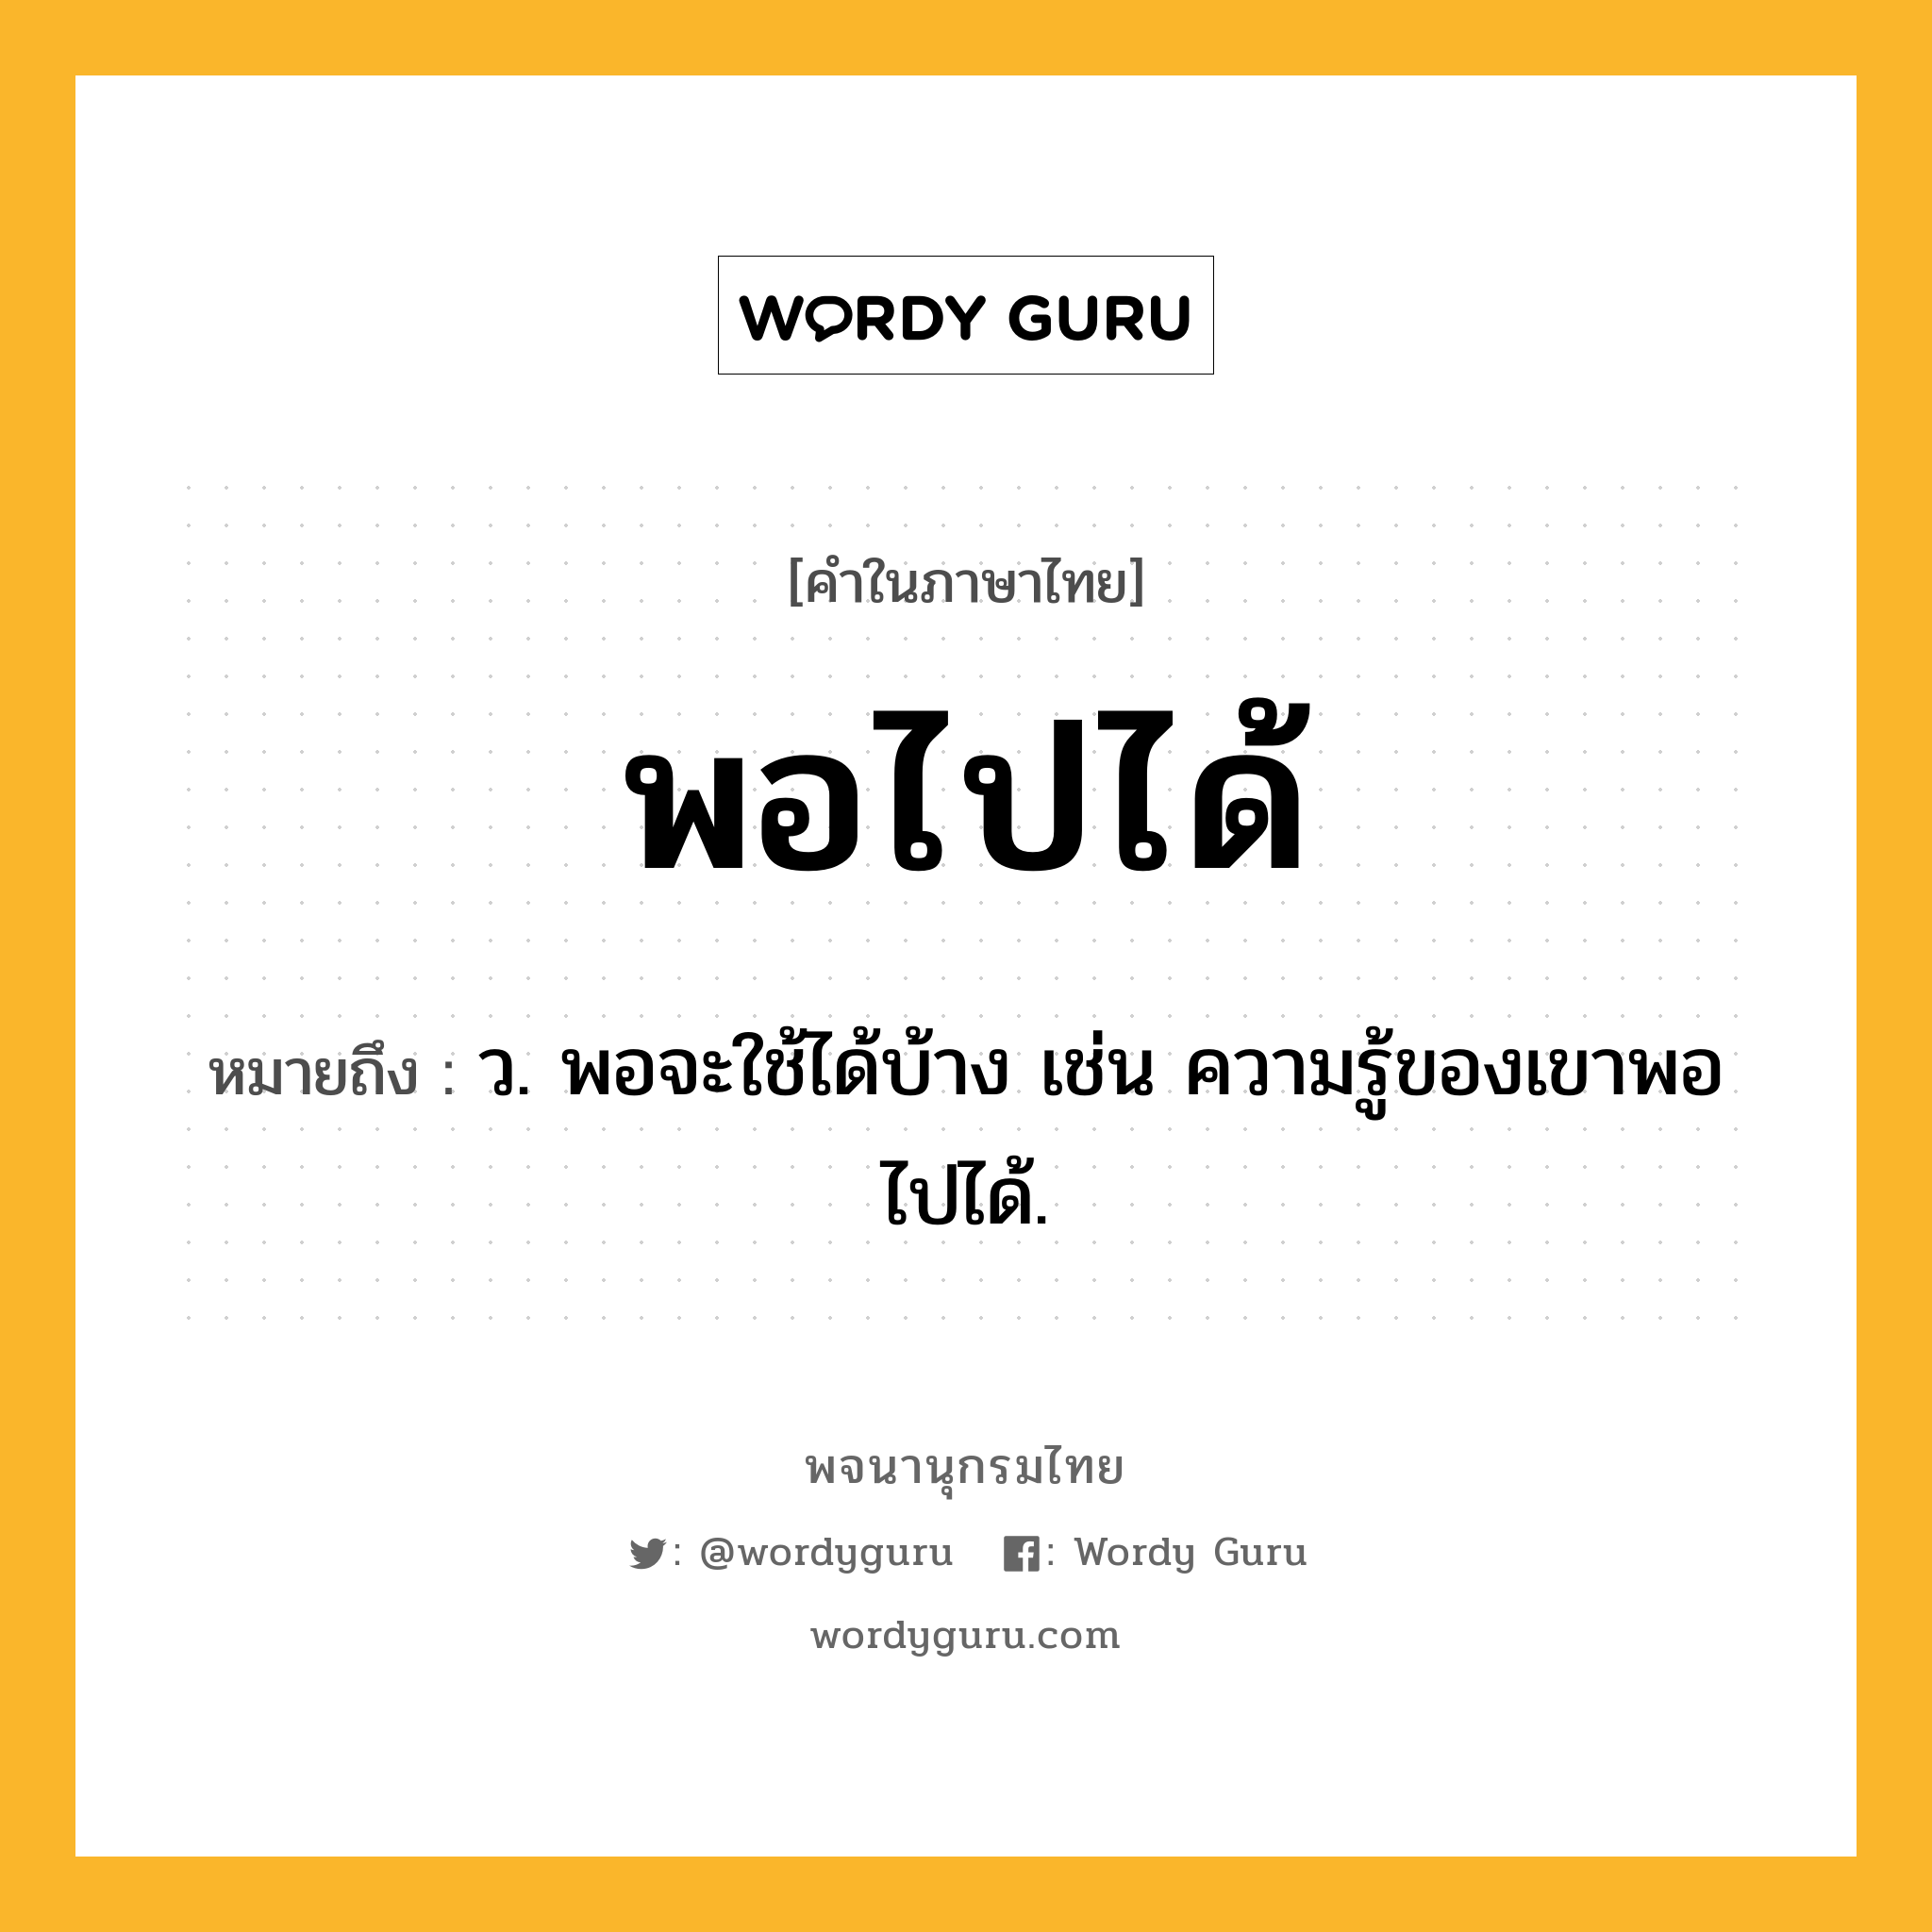 พอไปได้ ความหมาย หมายถึงอะไร?, คำในภาษาไทย พอไปได้ หมายถึง ว. พอจะใช้ได้บ้าง เช่น ความรู้ของเขาพอไปได้.